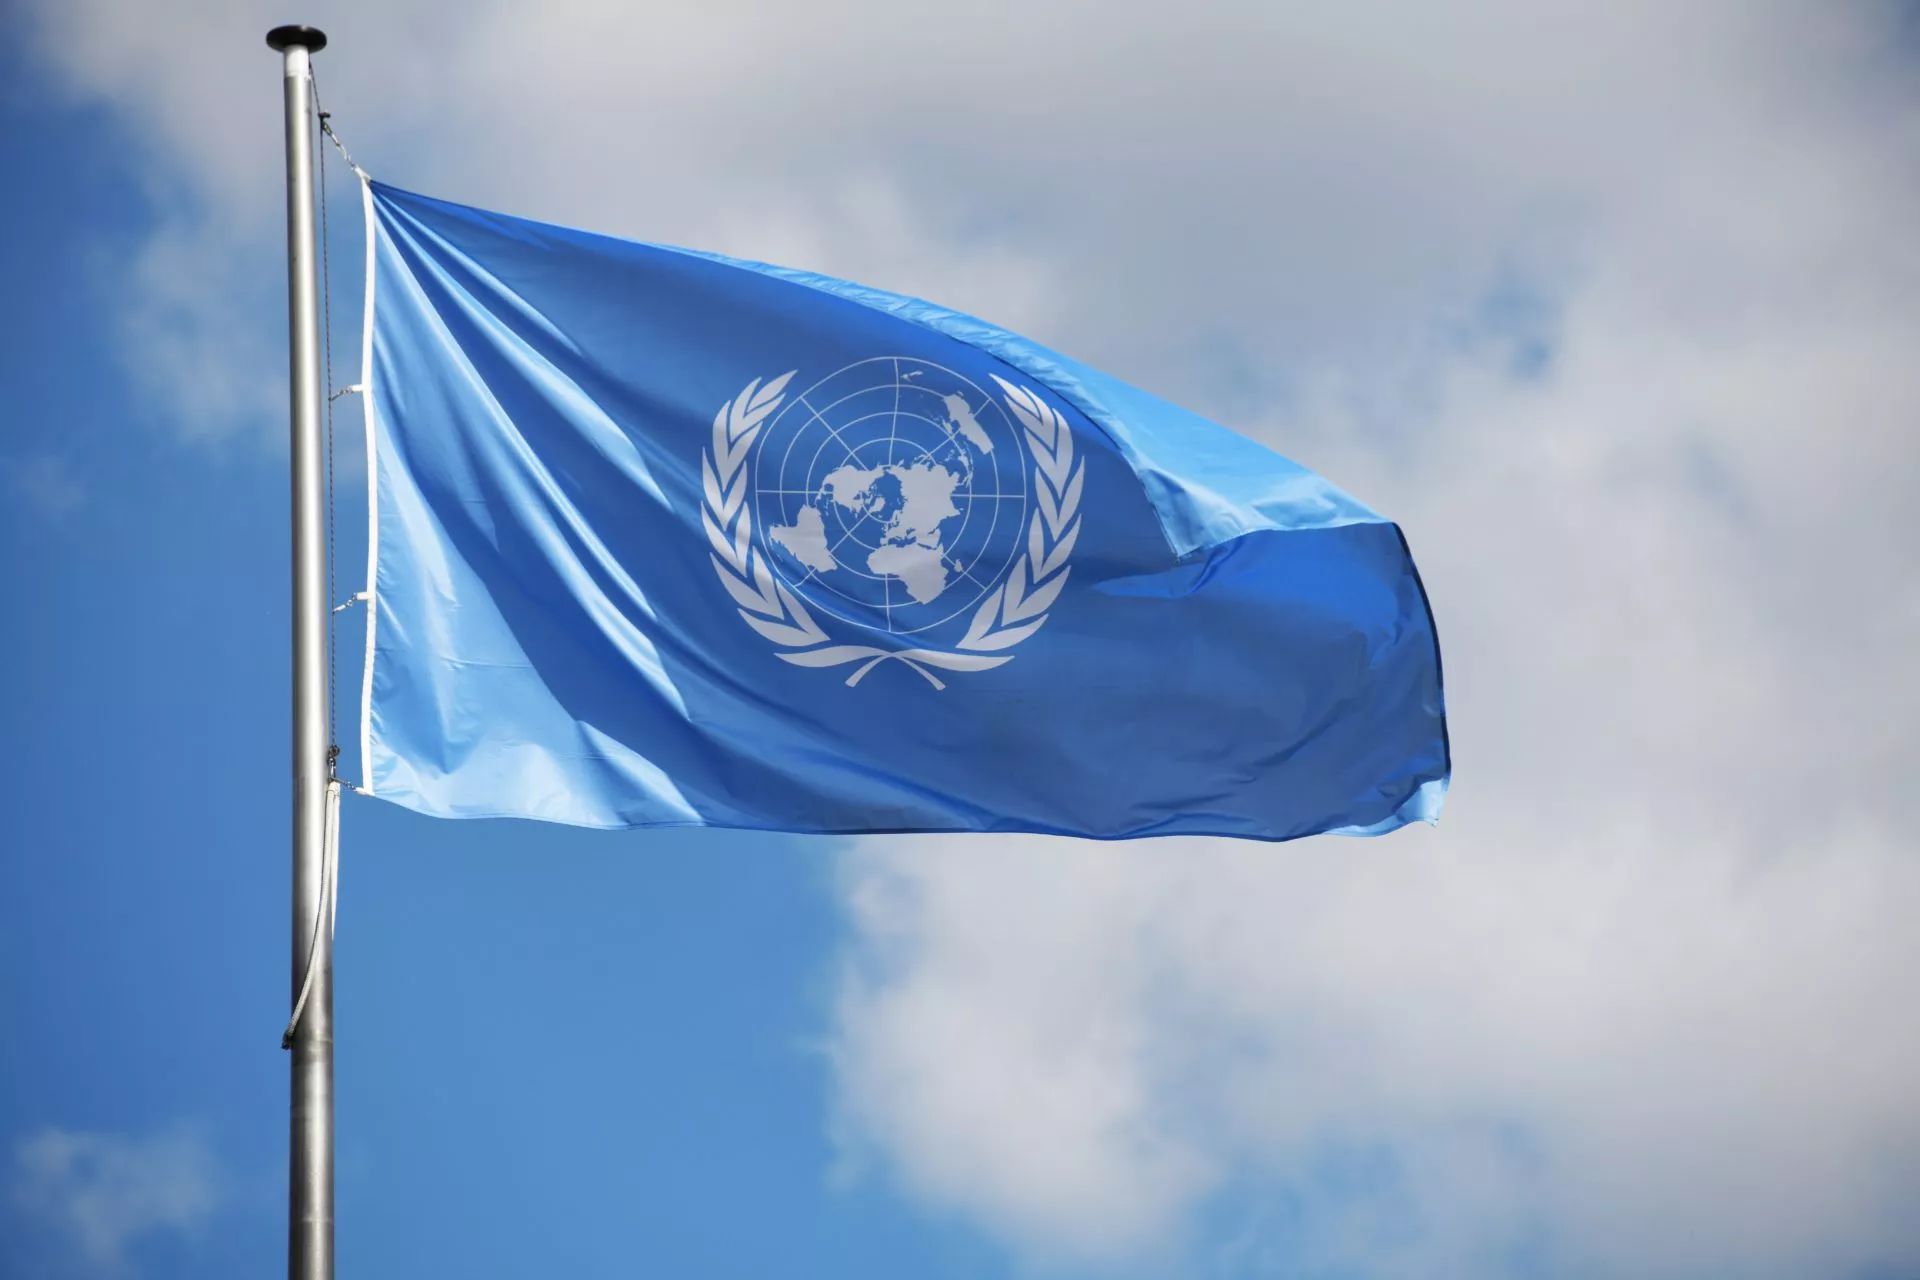 Verenigde Naties (VN)